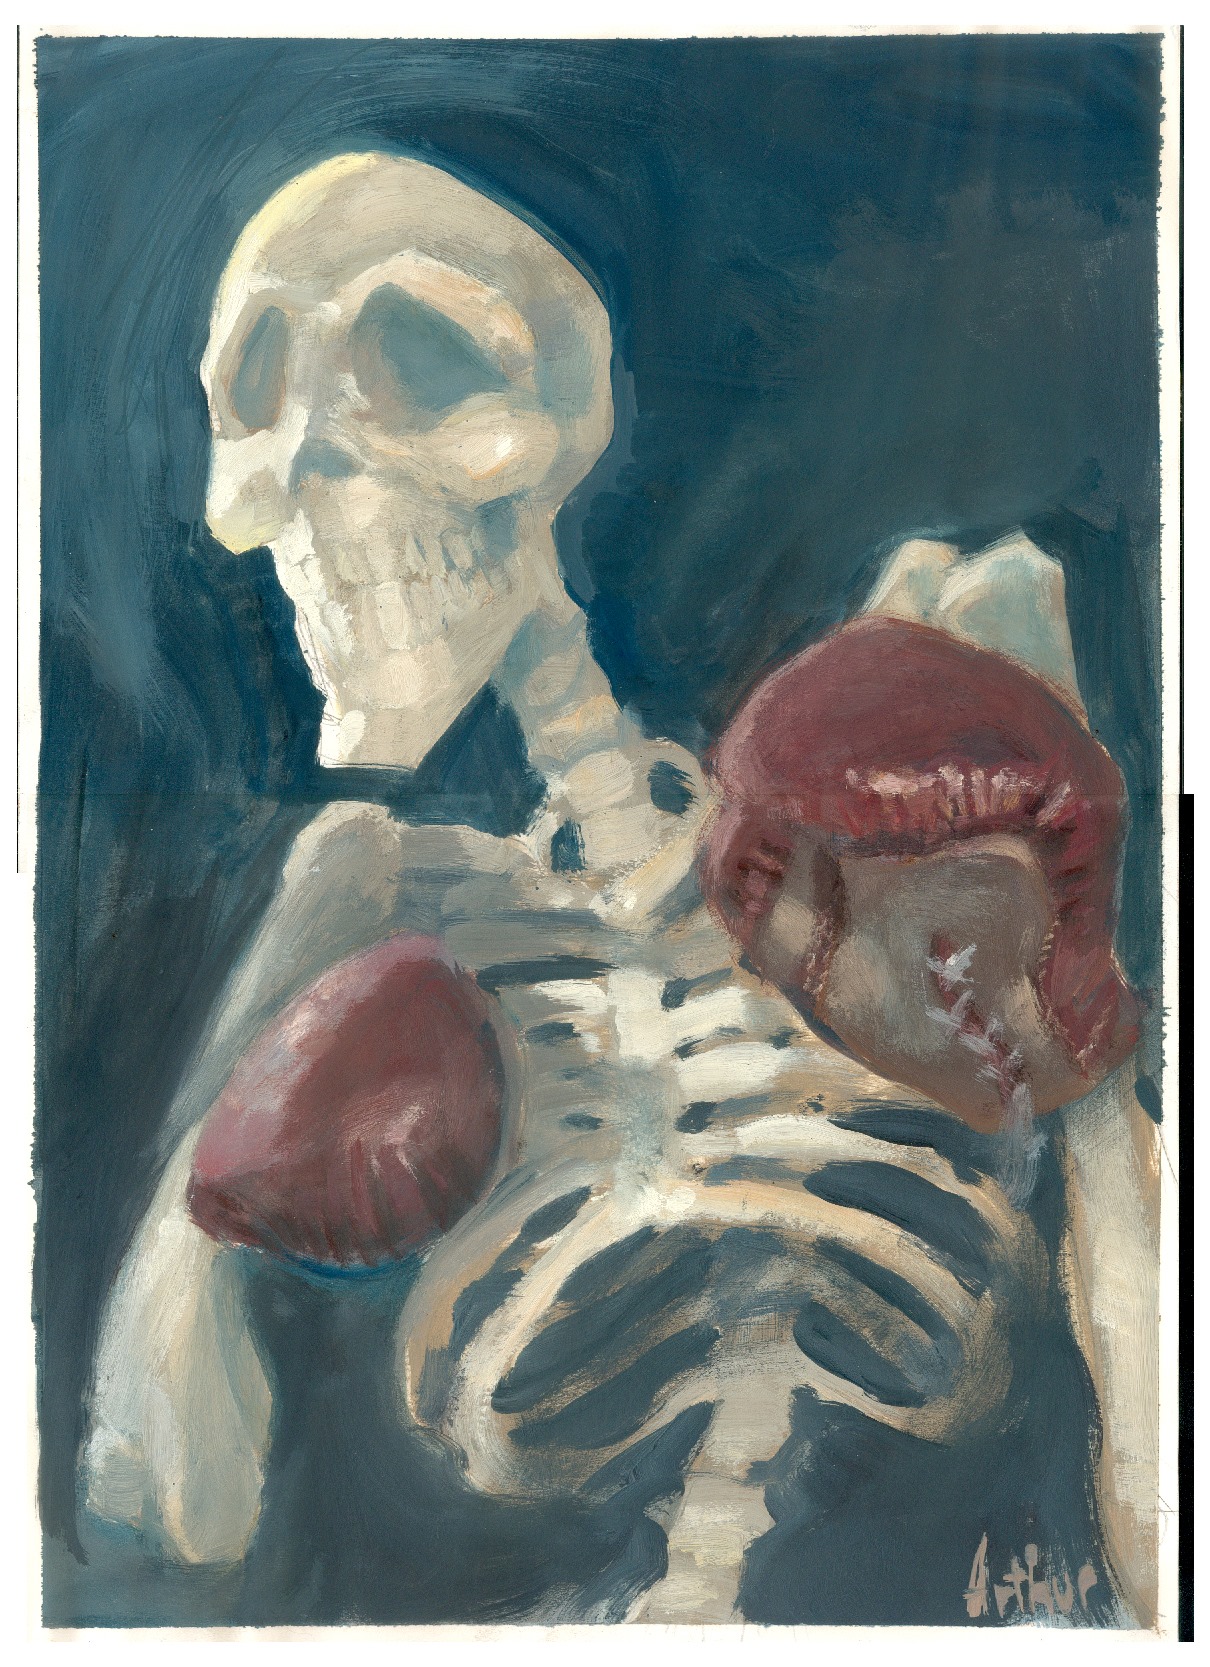 Un squelette à l'acrylique de 1998 © Arthur De Pins